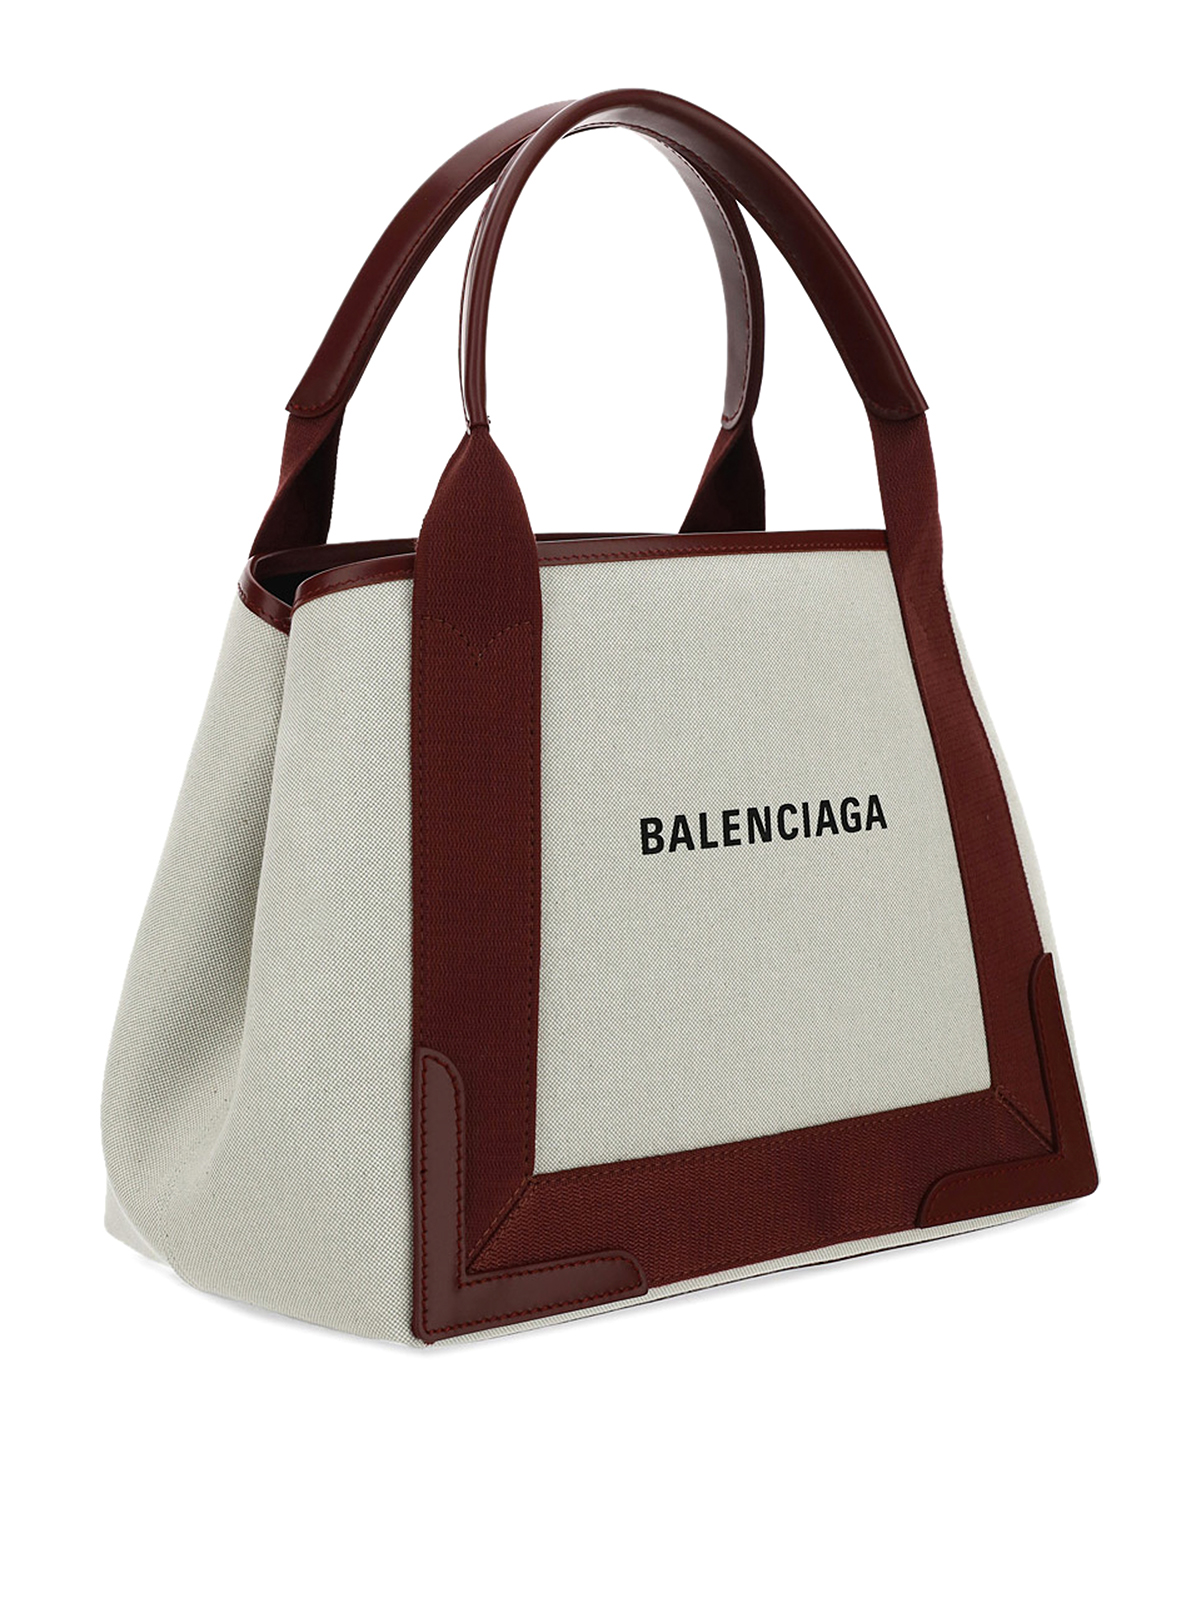 Balenciaga - Canvas tote bag - totes bags - 3399332HH3N9262 | iKRIX.com